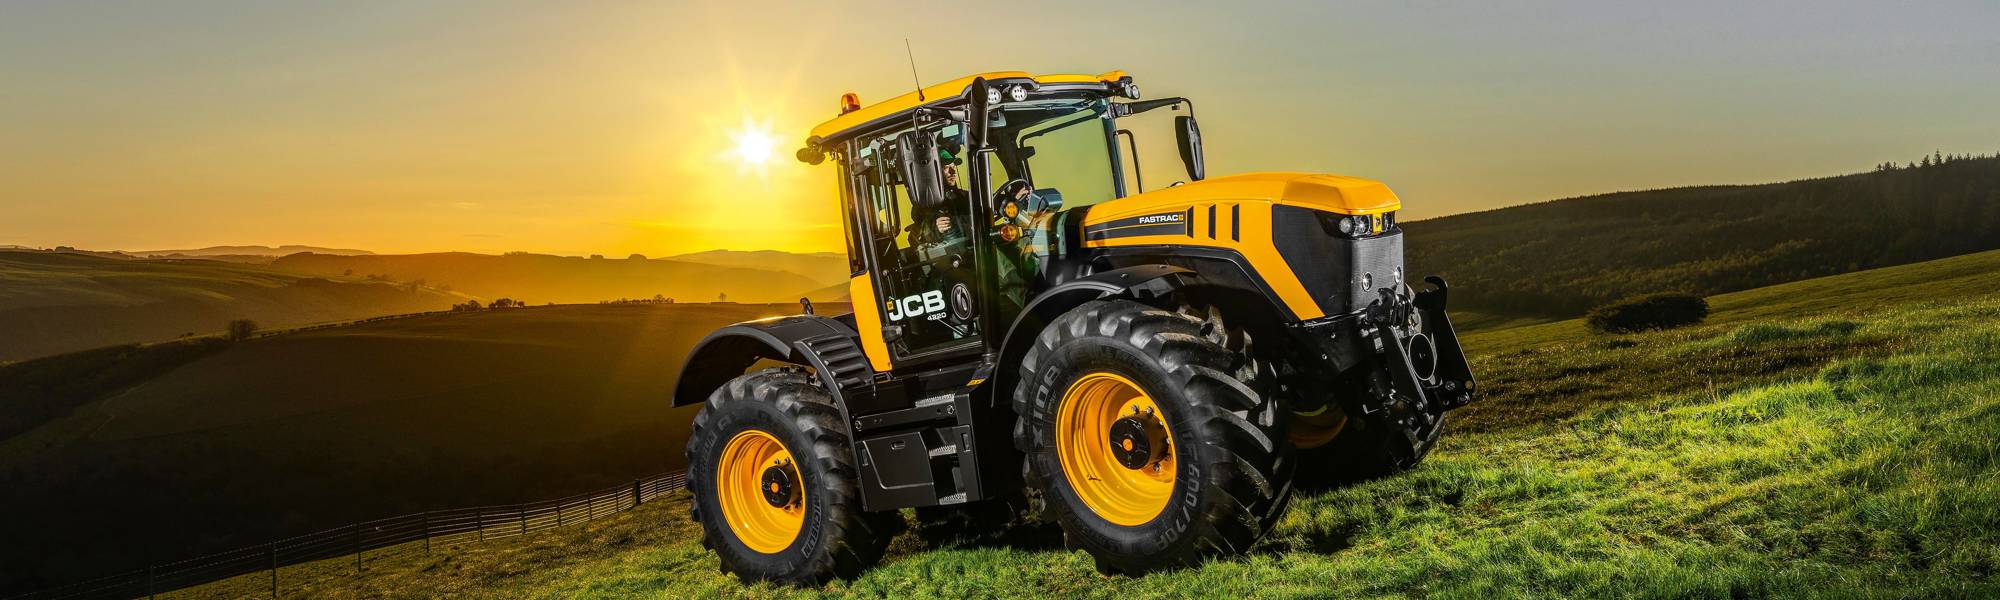 JCB Fastrac 4220 Agricultural Tractors - Scot JCB